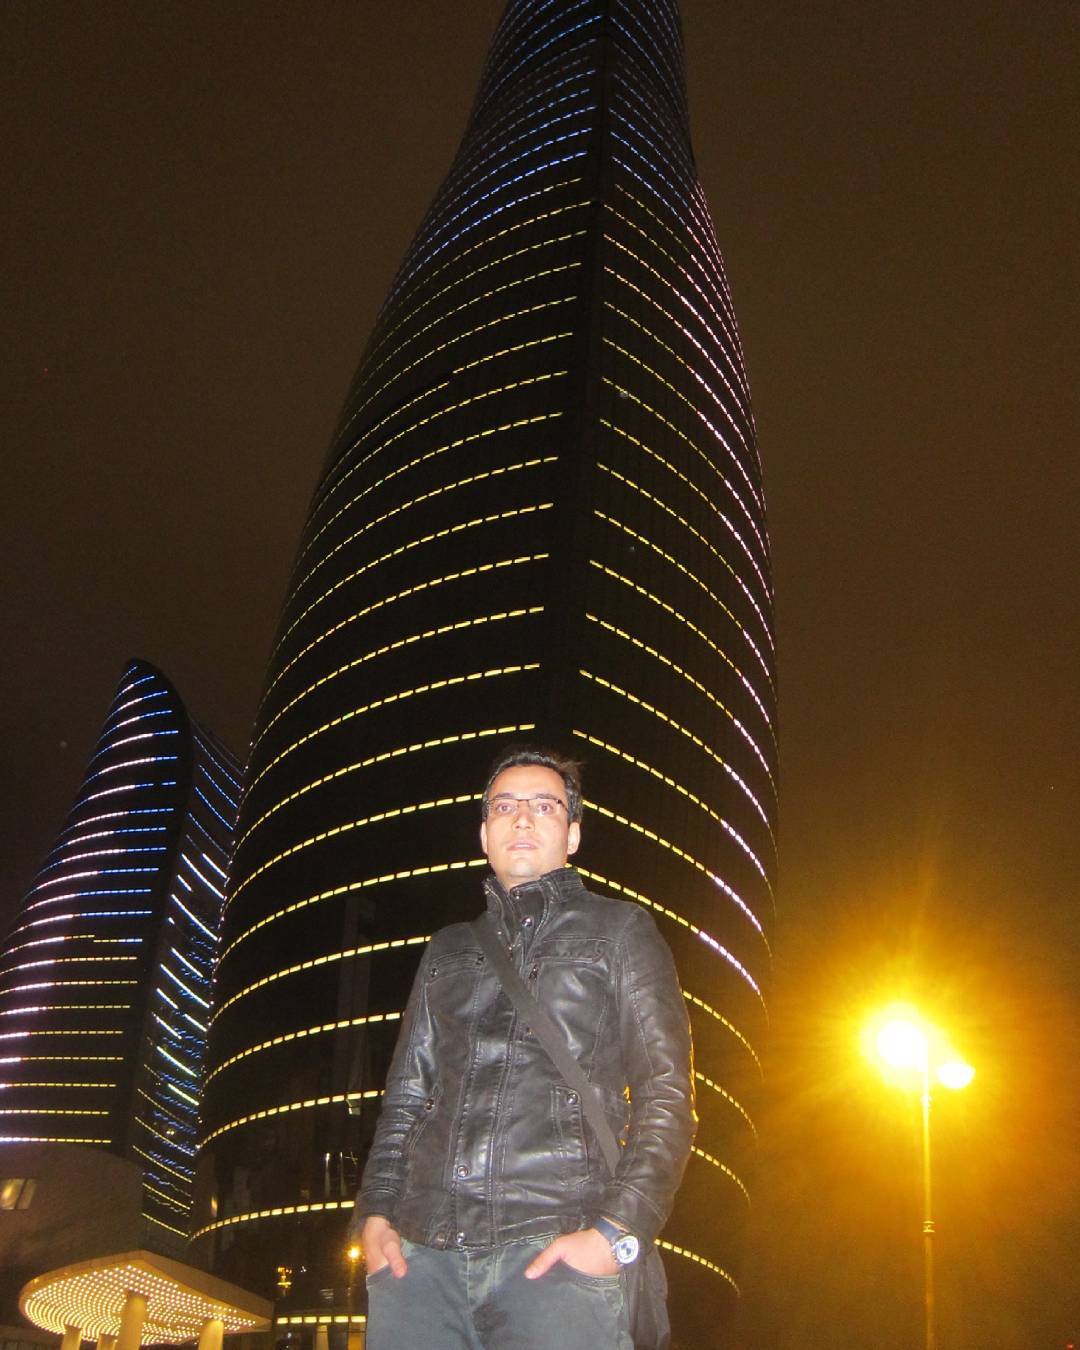 برج های شعله باکو